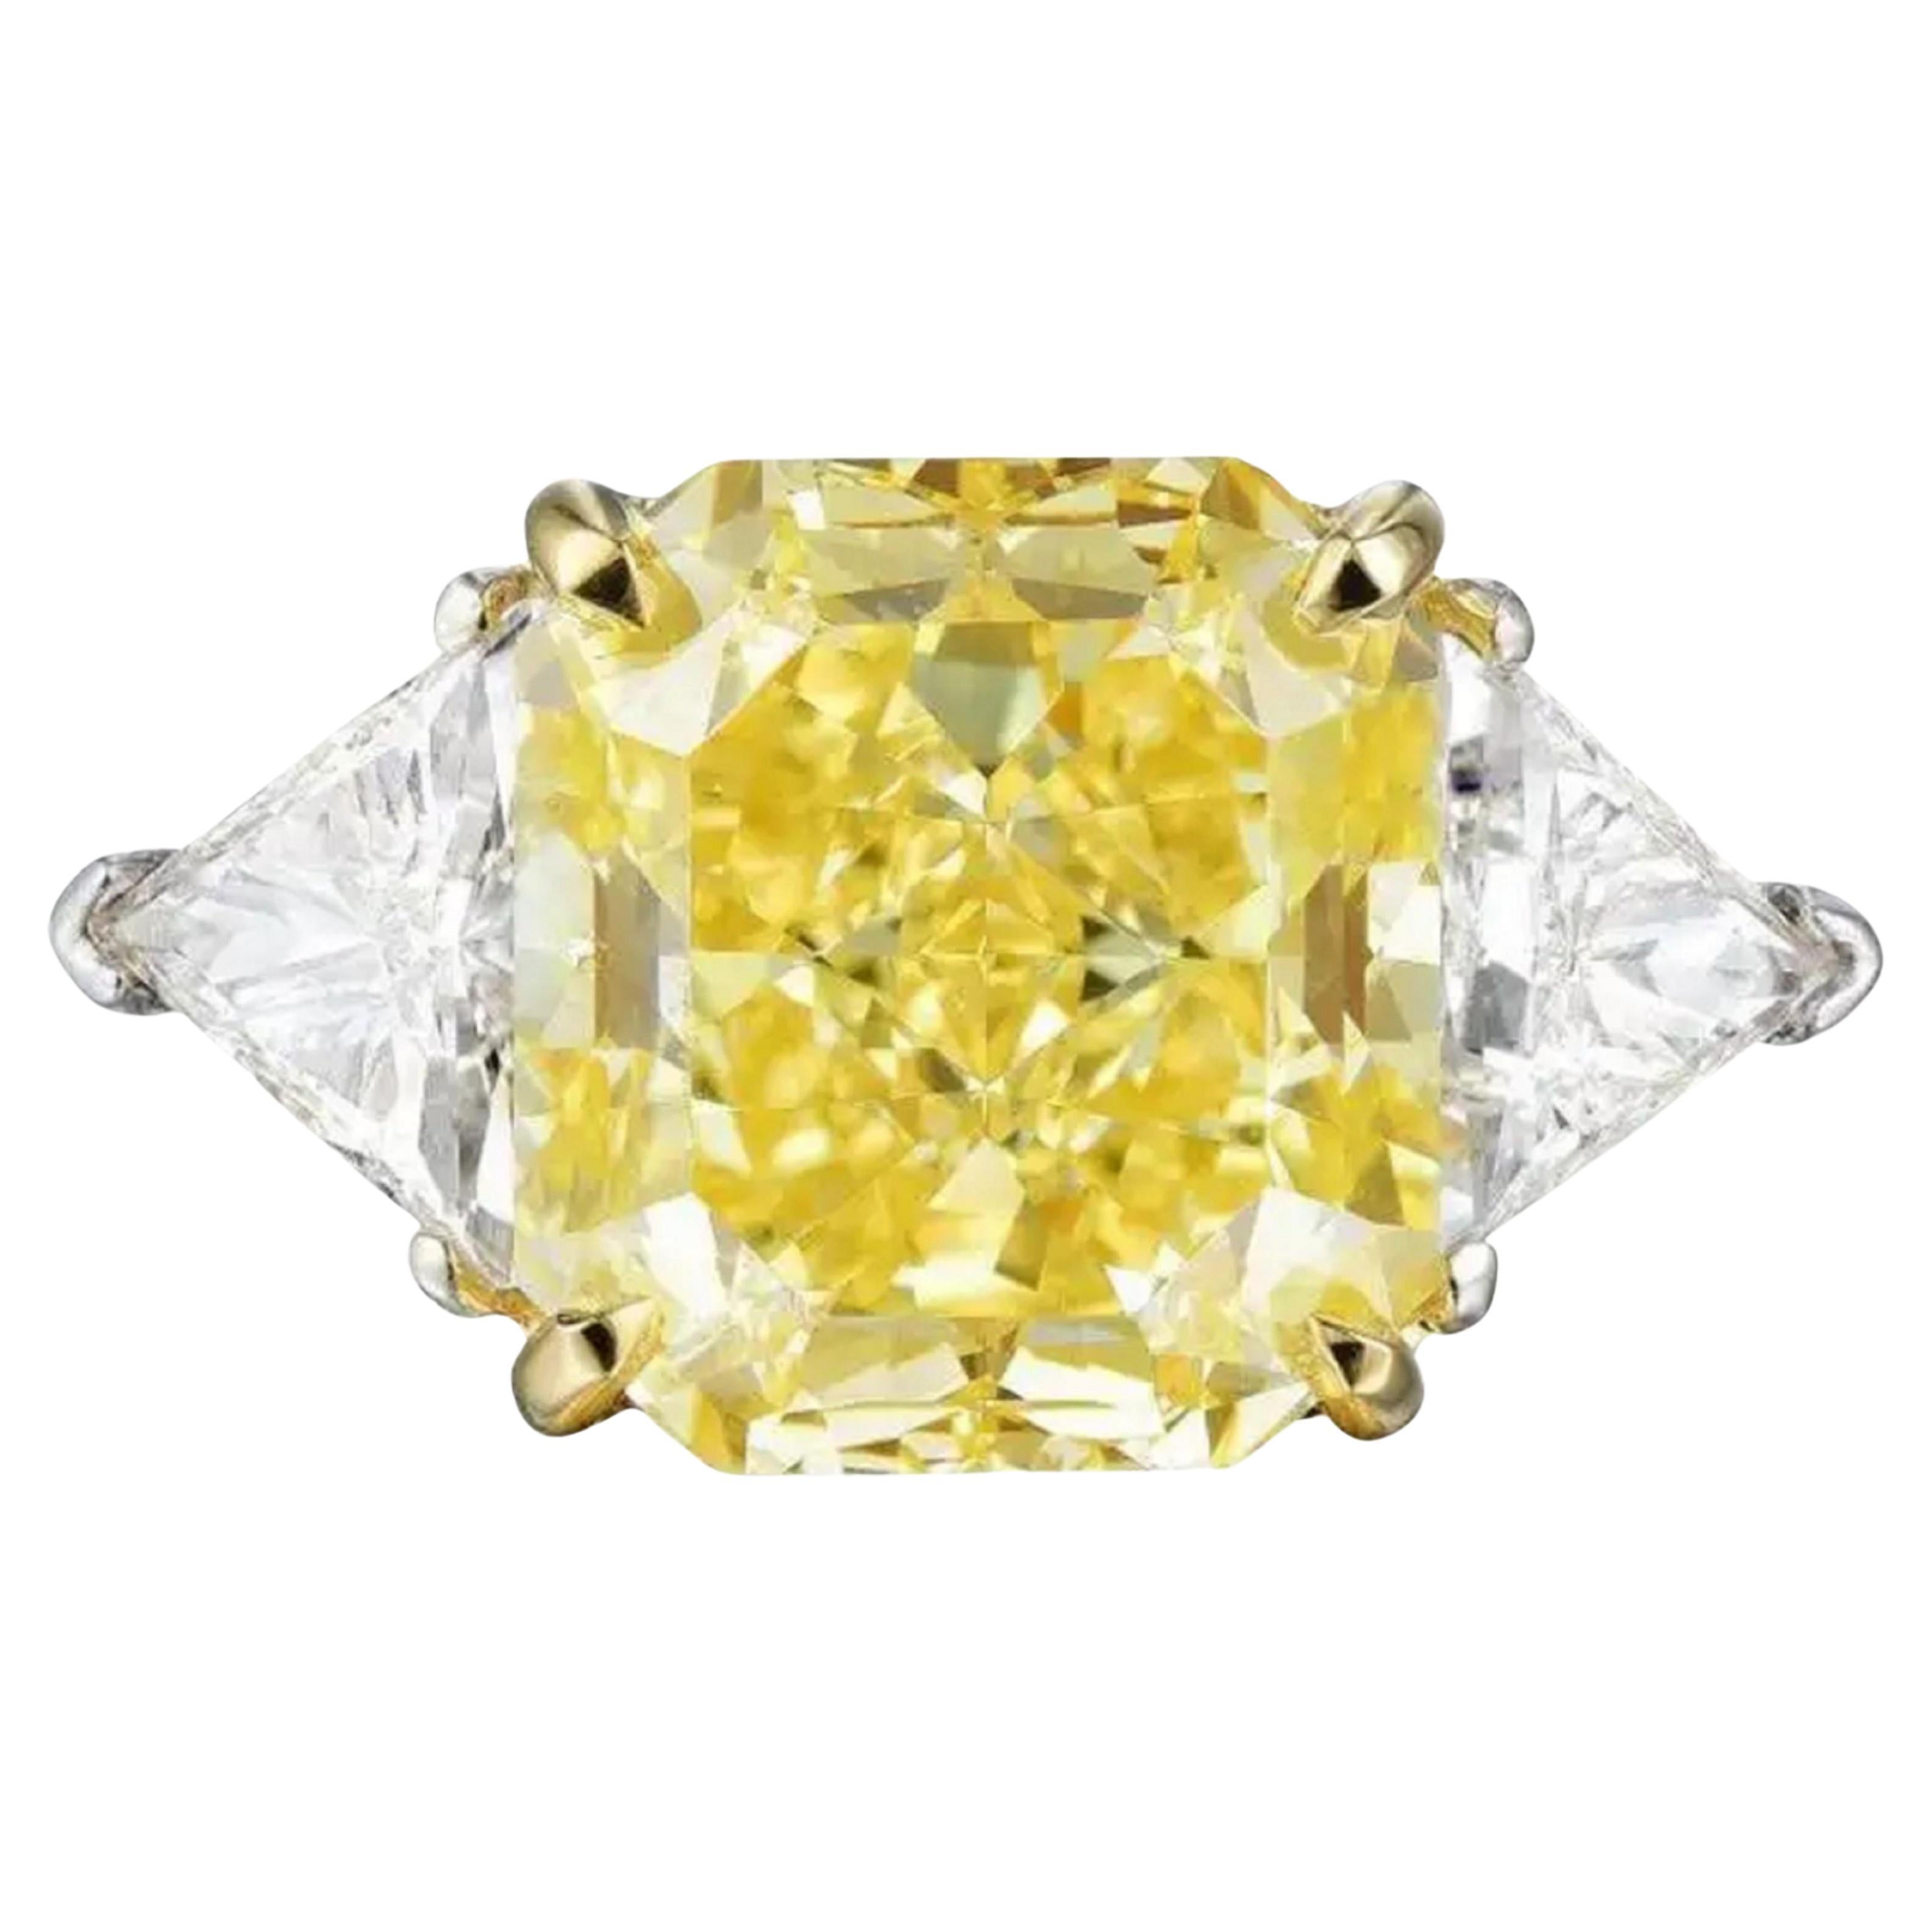 GIA Certified 2.31 Carat Fancy Yellow Cushion Cut Diamond Ring VS2 Clarity